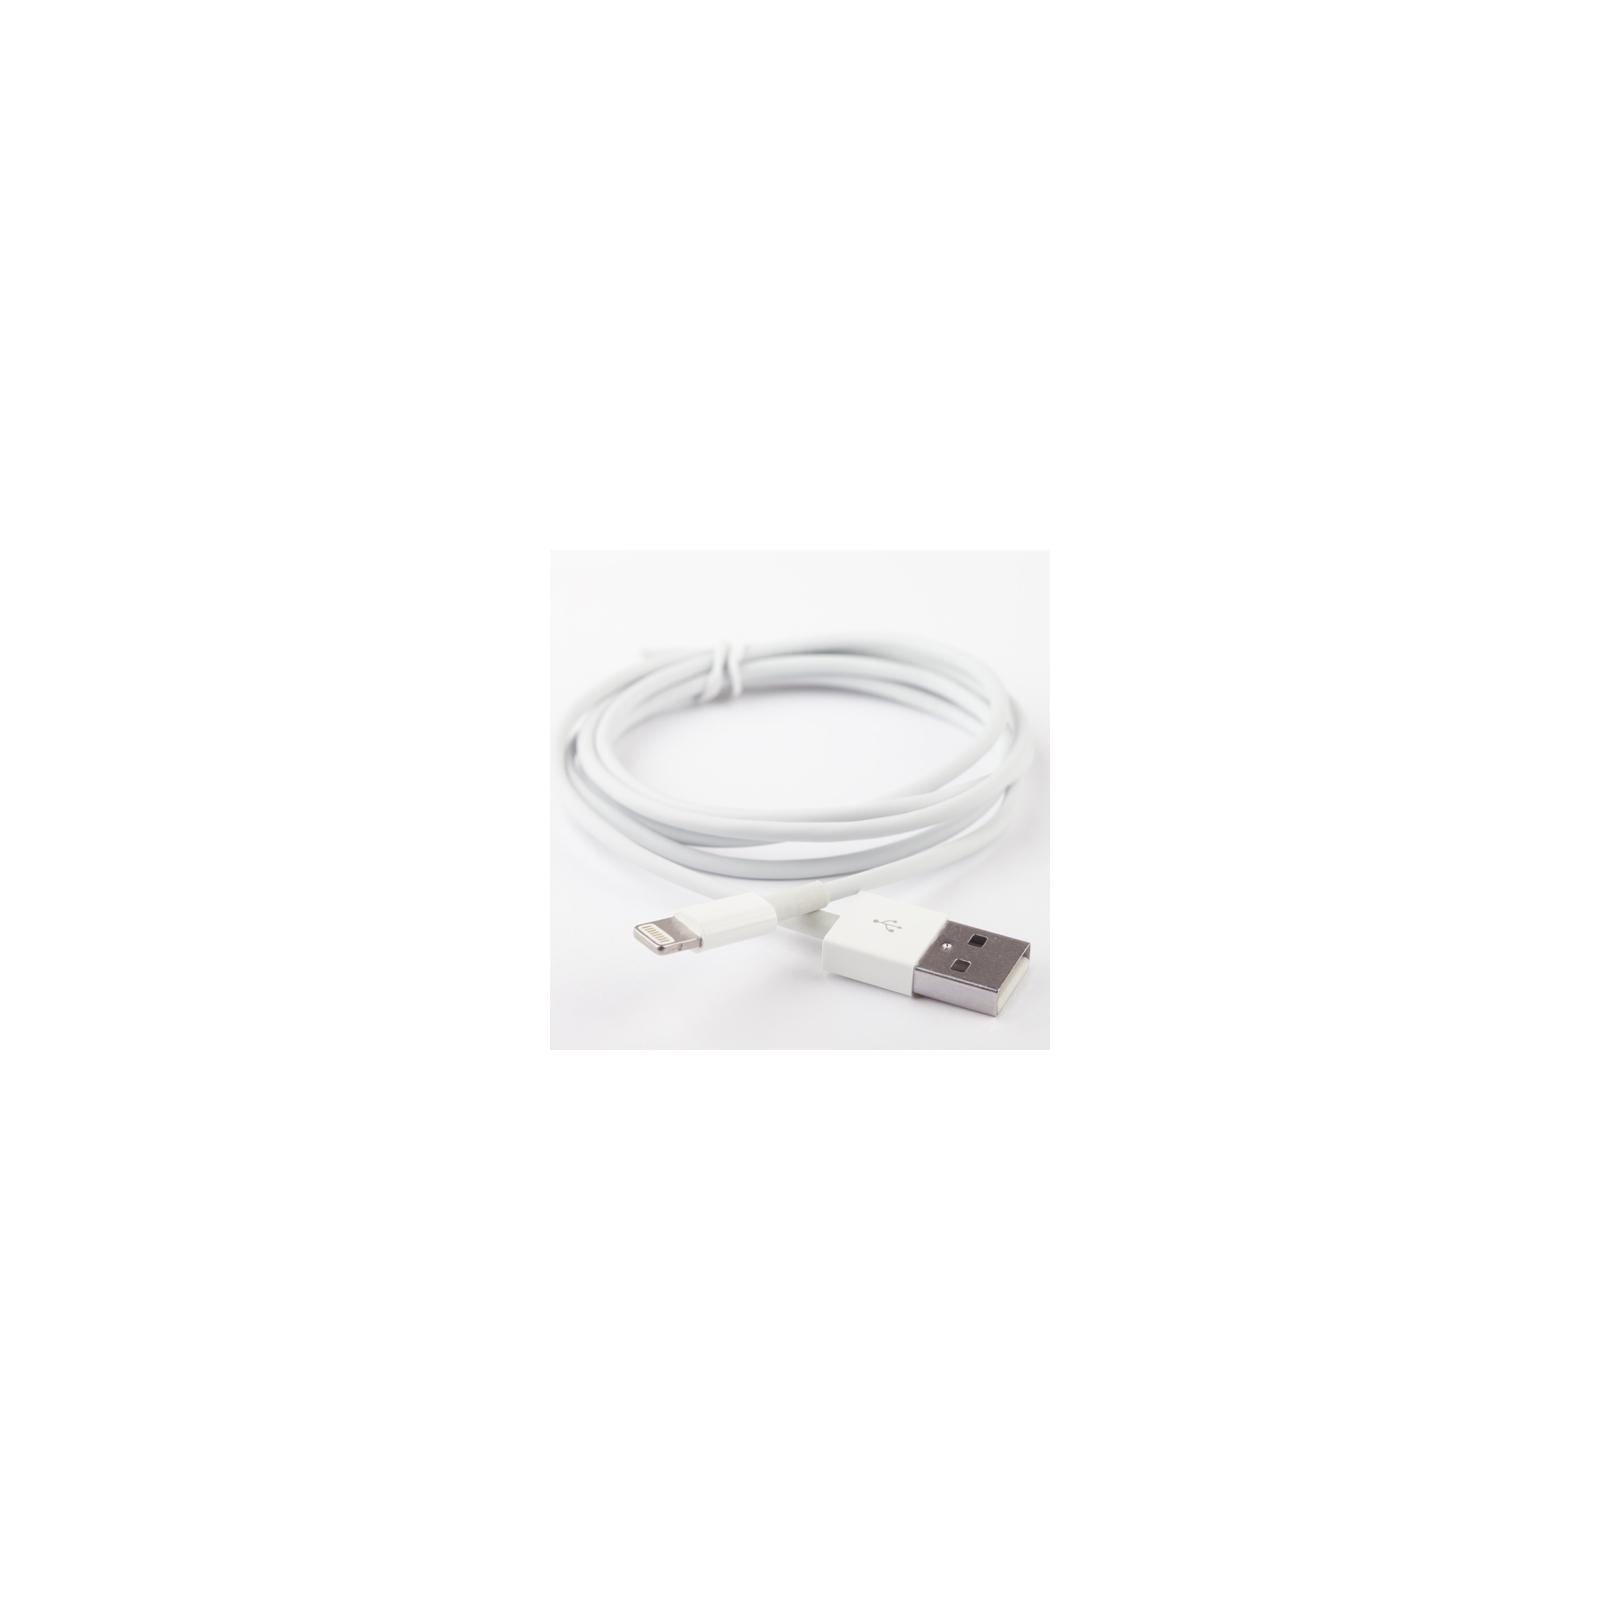 Дата кабель USB 2.0 AM to Lightning 1.8m Gemix (GC 1924) изображение 2